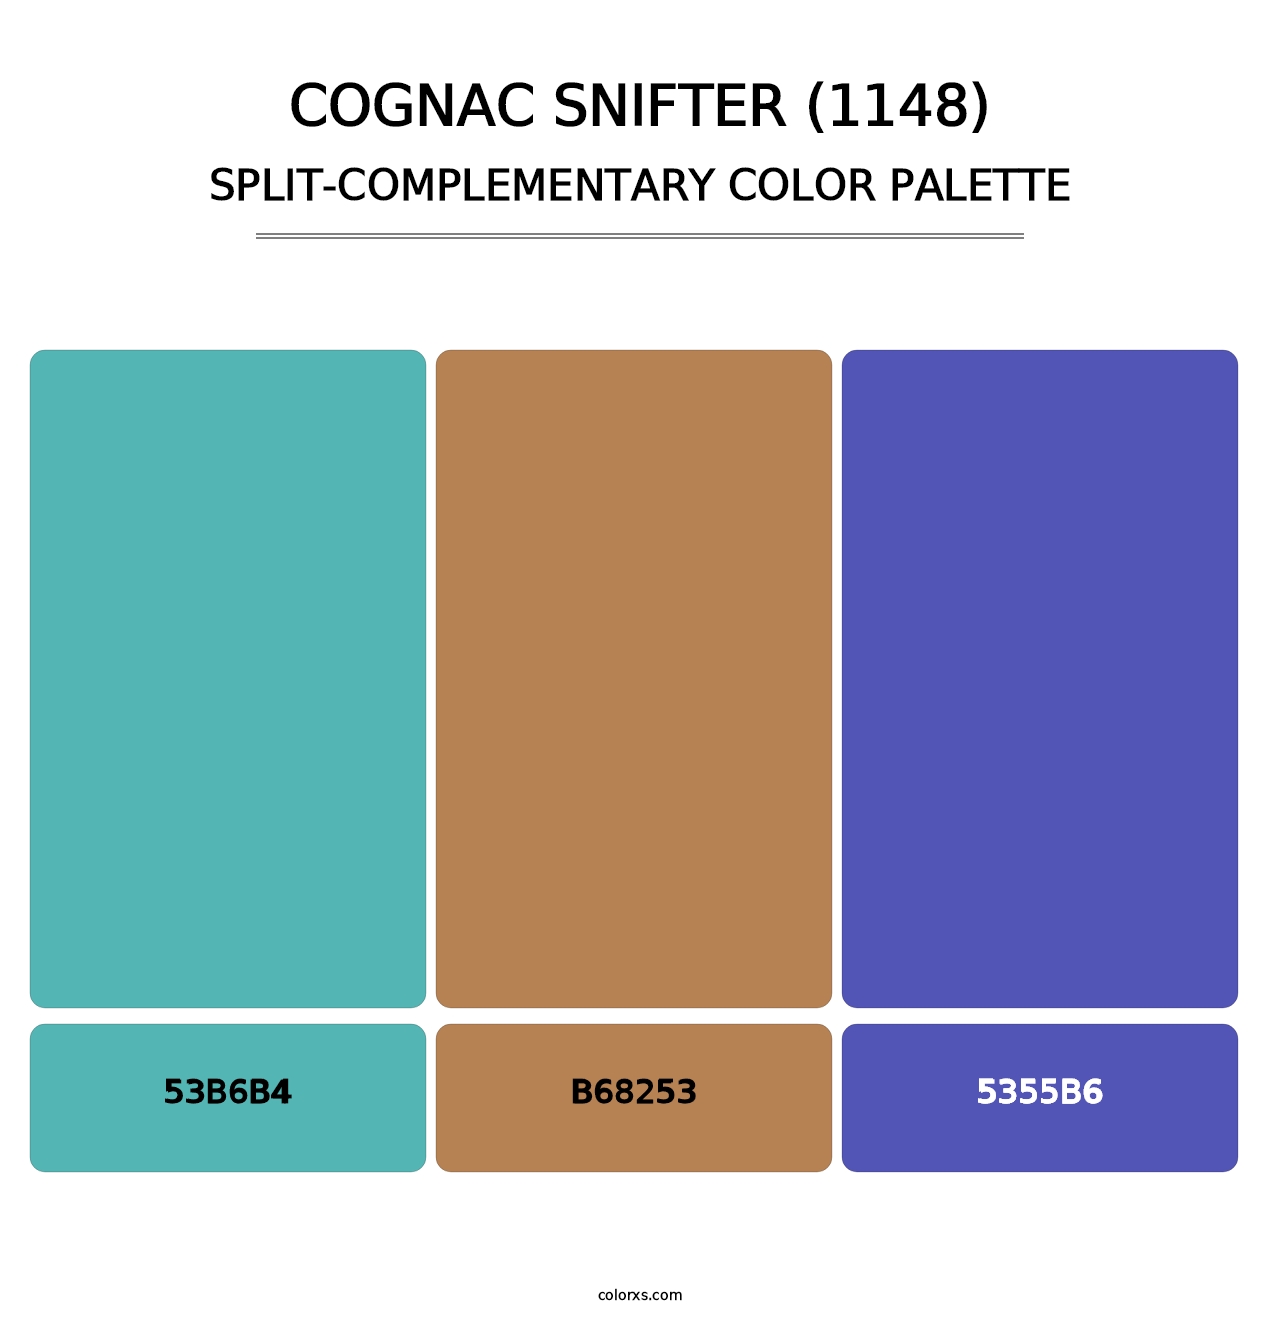 Cognac Snifter (1148) - Split-Complementary Color Palette